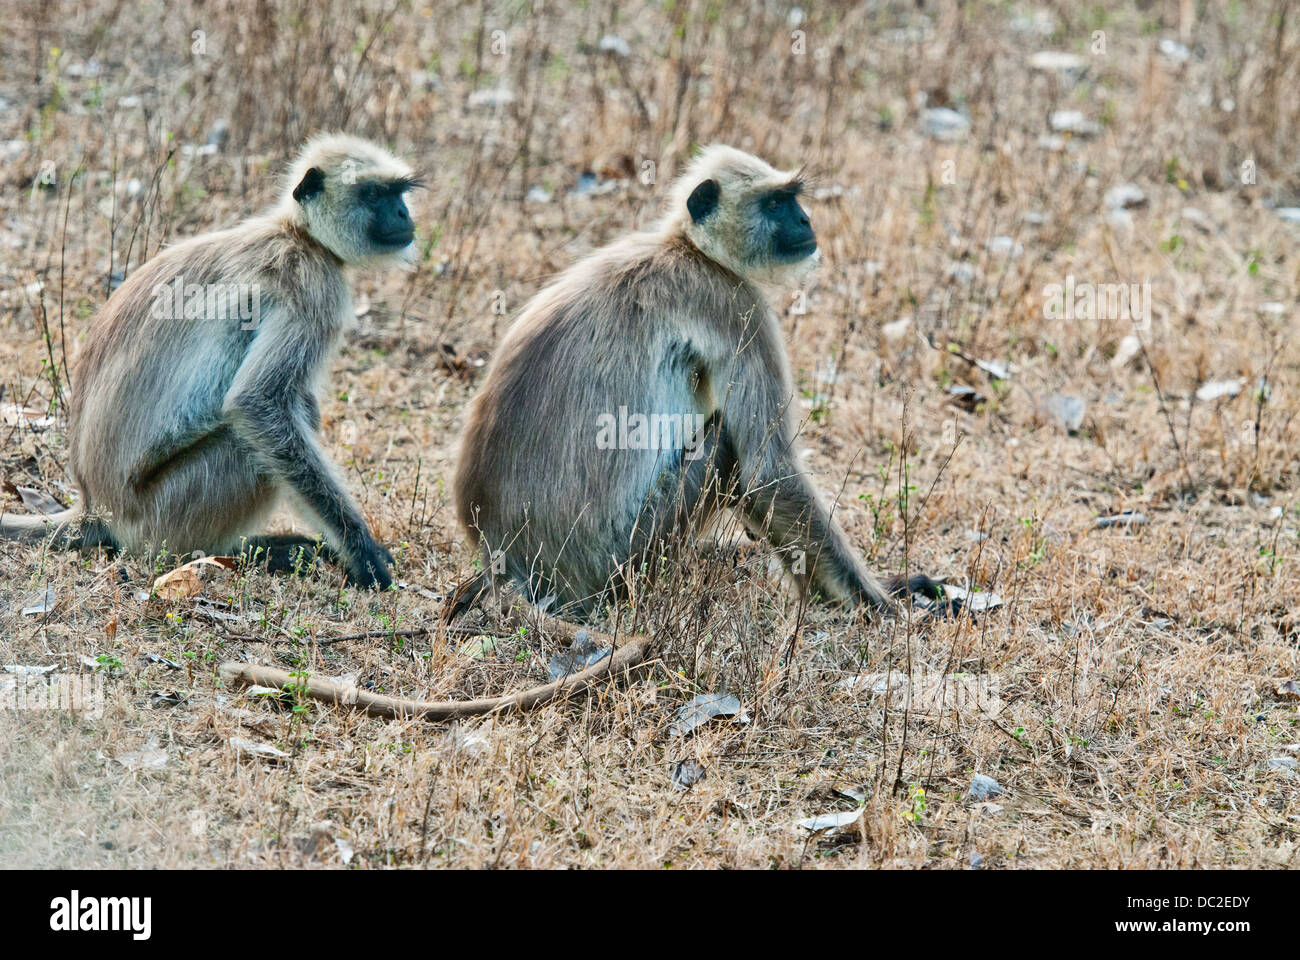 Les singes Langur à face noire dans Bandhavgarh National Park, Inde Banque D'Images